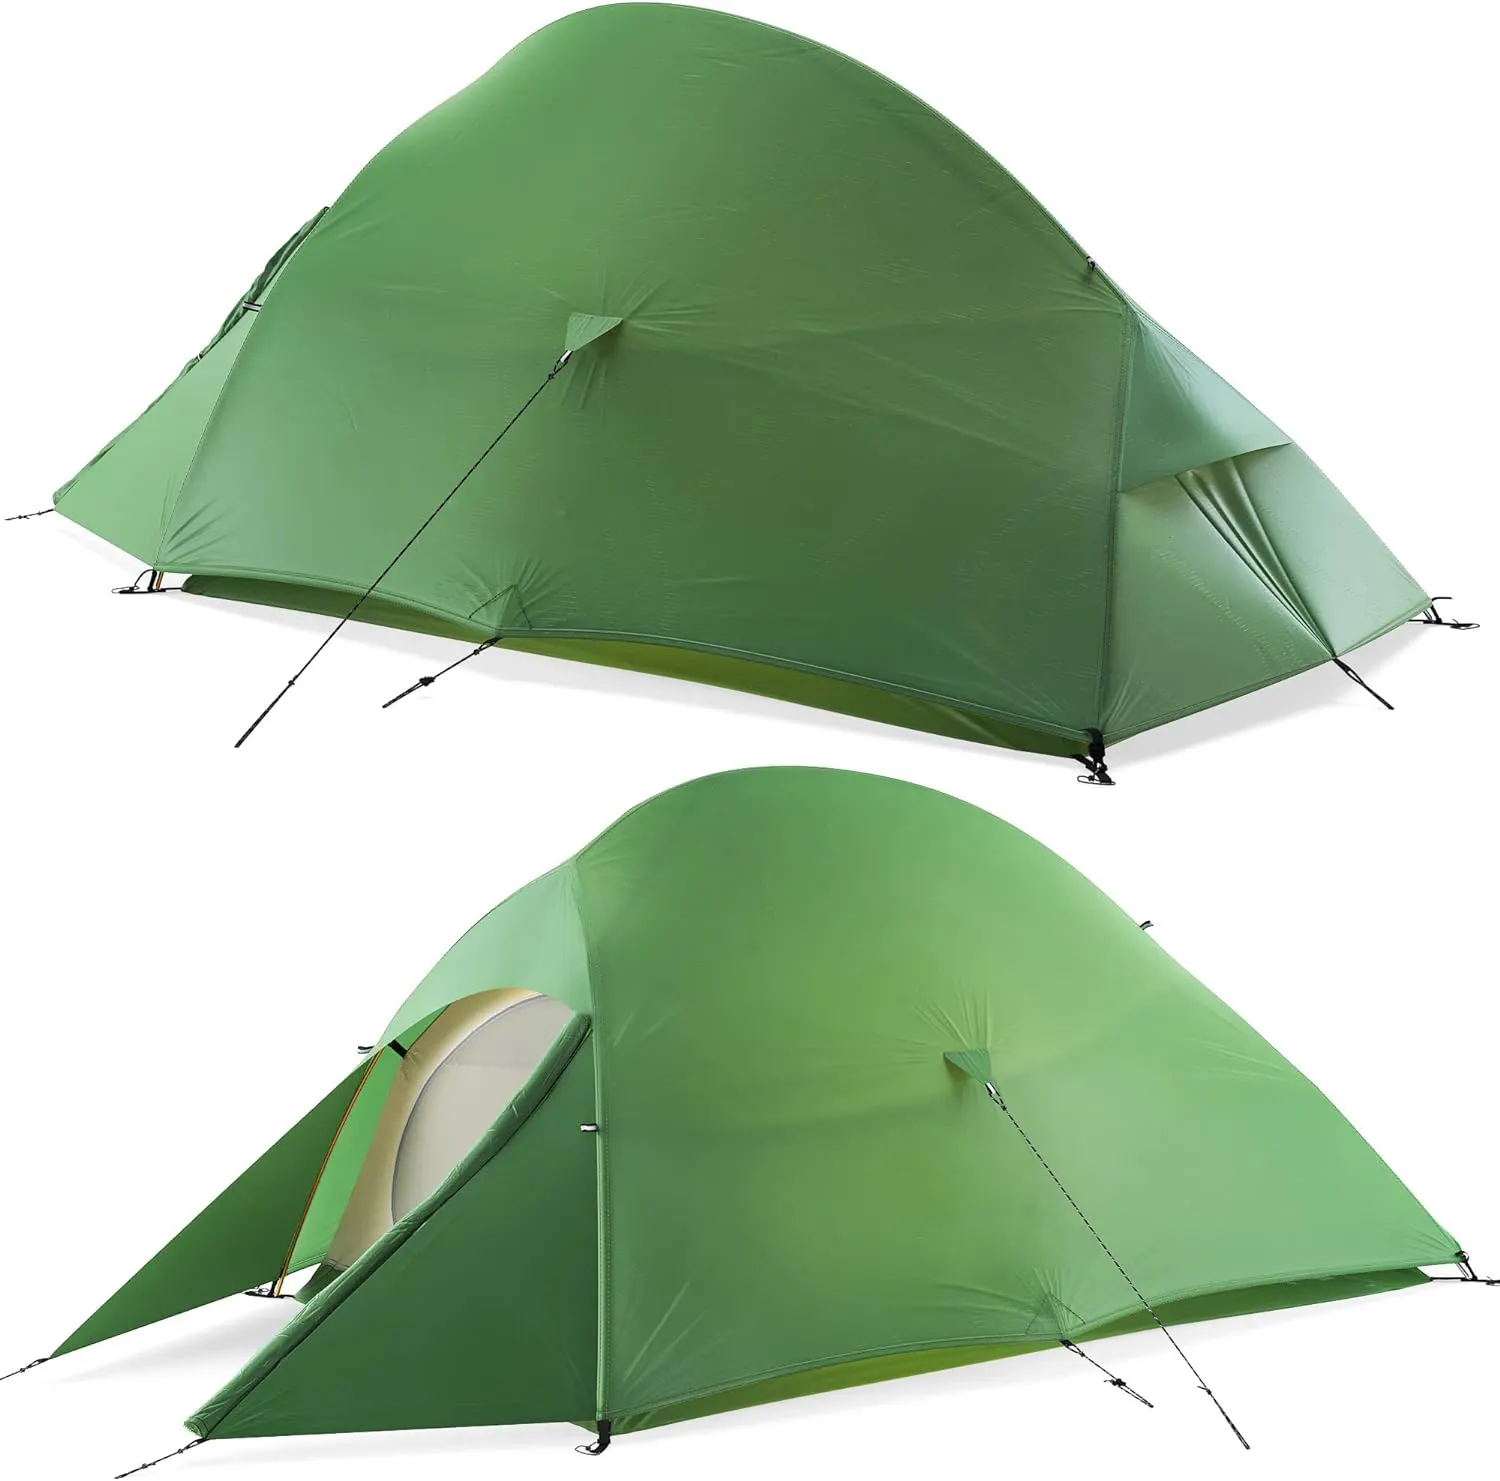 אוהל תרמילאים קל משקל NPOT 2 אנשים 3 עונות קל במיוחד עמיד למים עם טביעת רגל התקנה קלה אוהל חיצוני שכבה כפולה